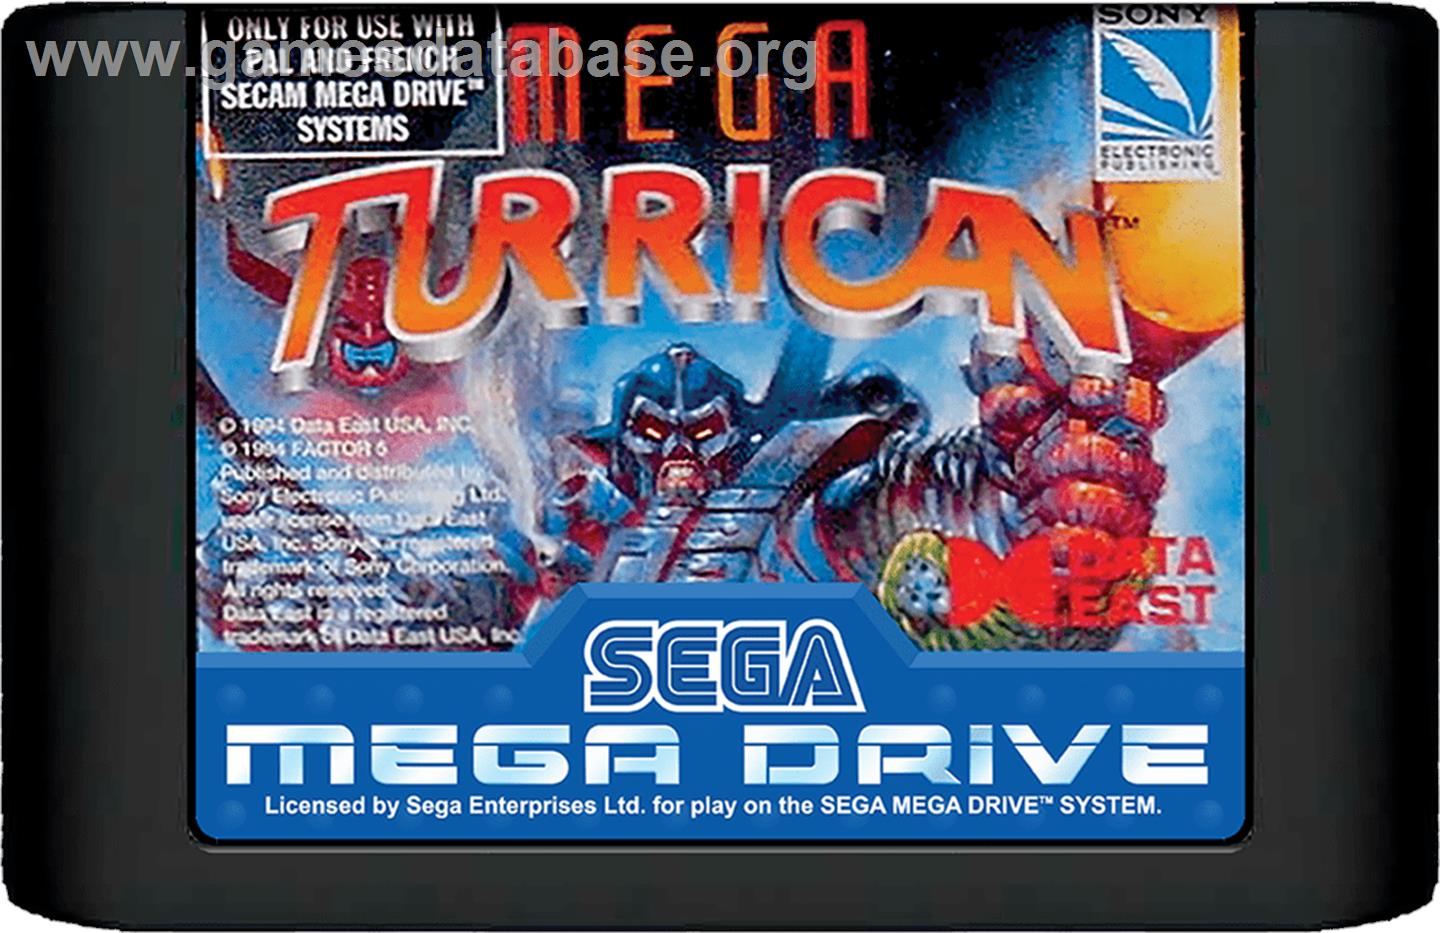 Mega Turrican - Sega Genesis - Artwork - Cartridge